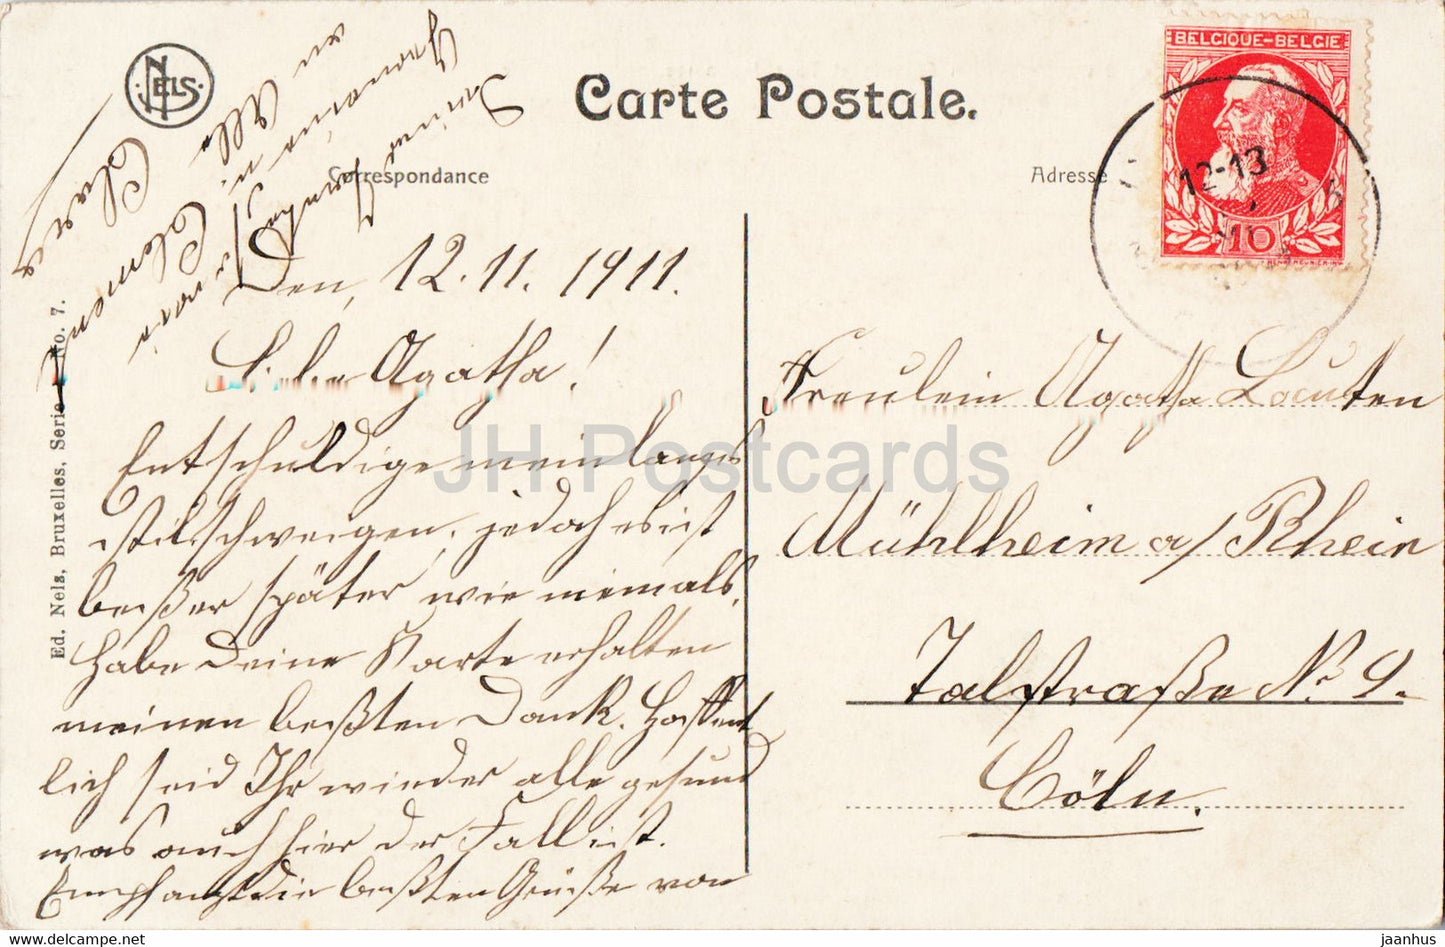 Bruxelles Laeken - Brussels - Pavillon Chinois et Tour Japonaise - 7 - old postcard - 1911 - Belgium - used